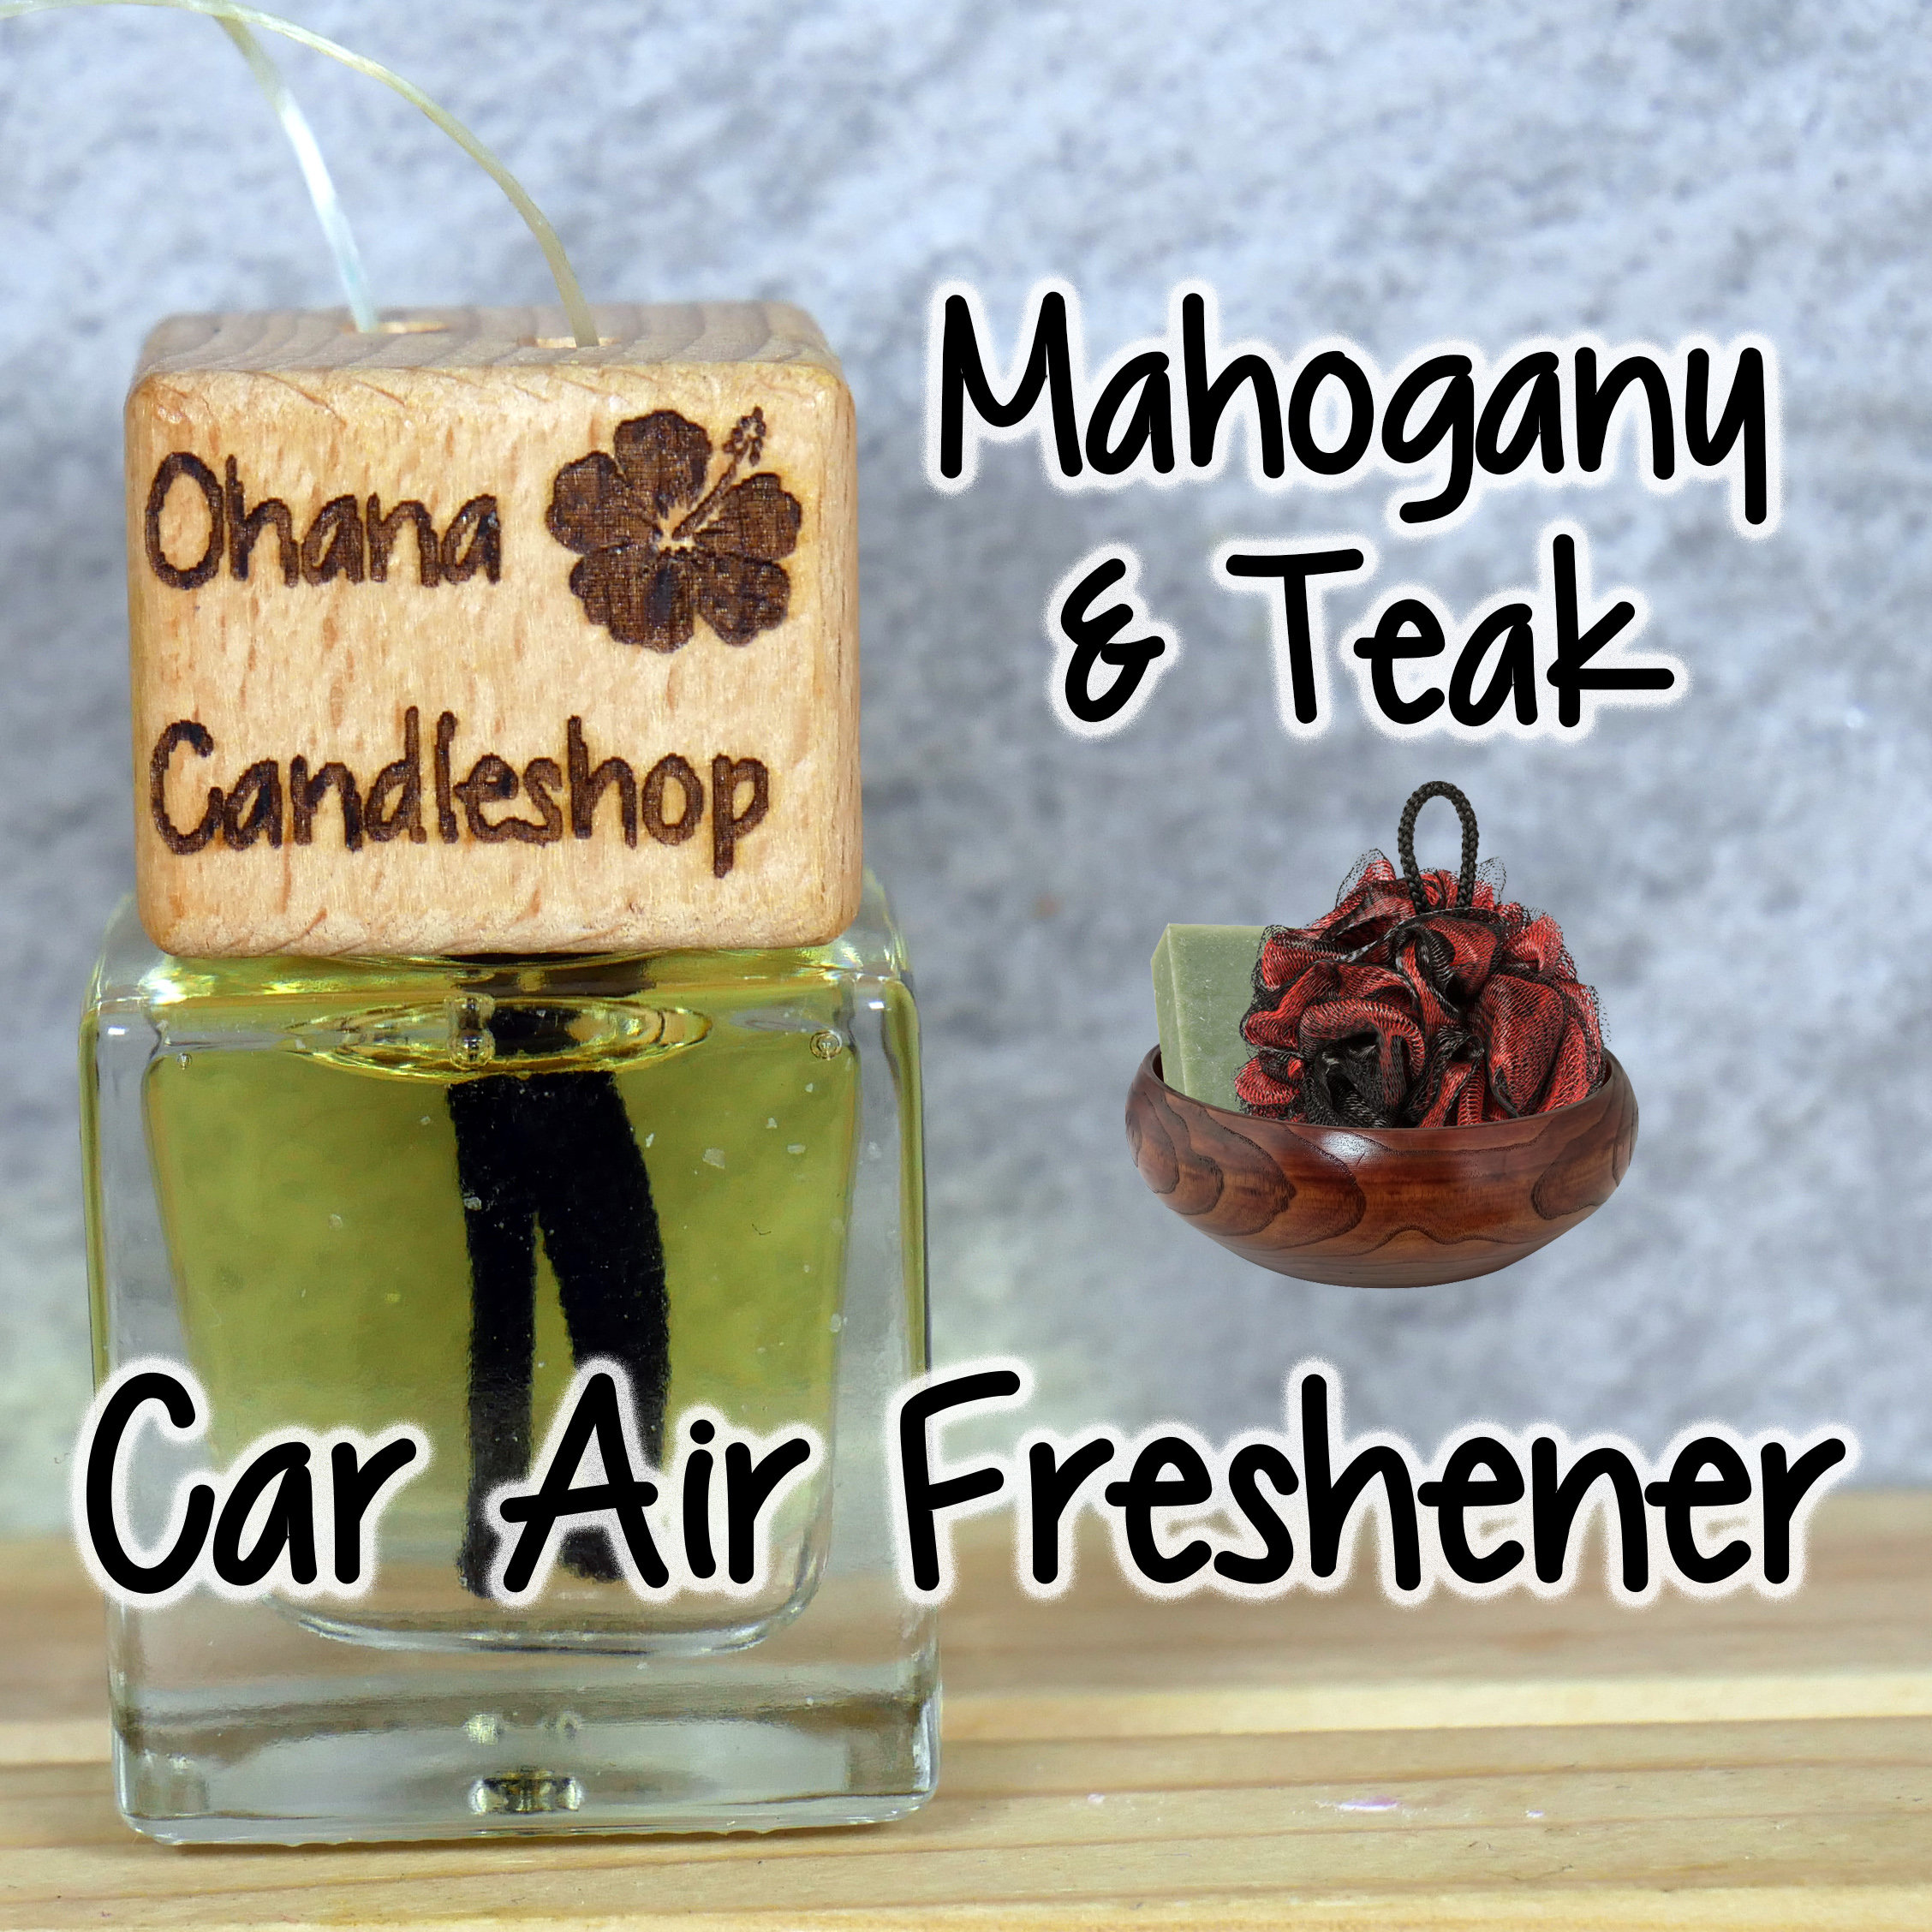 Mahogany Teak Car Freshener